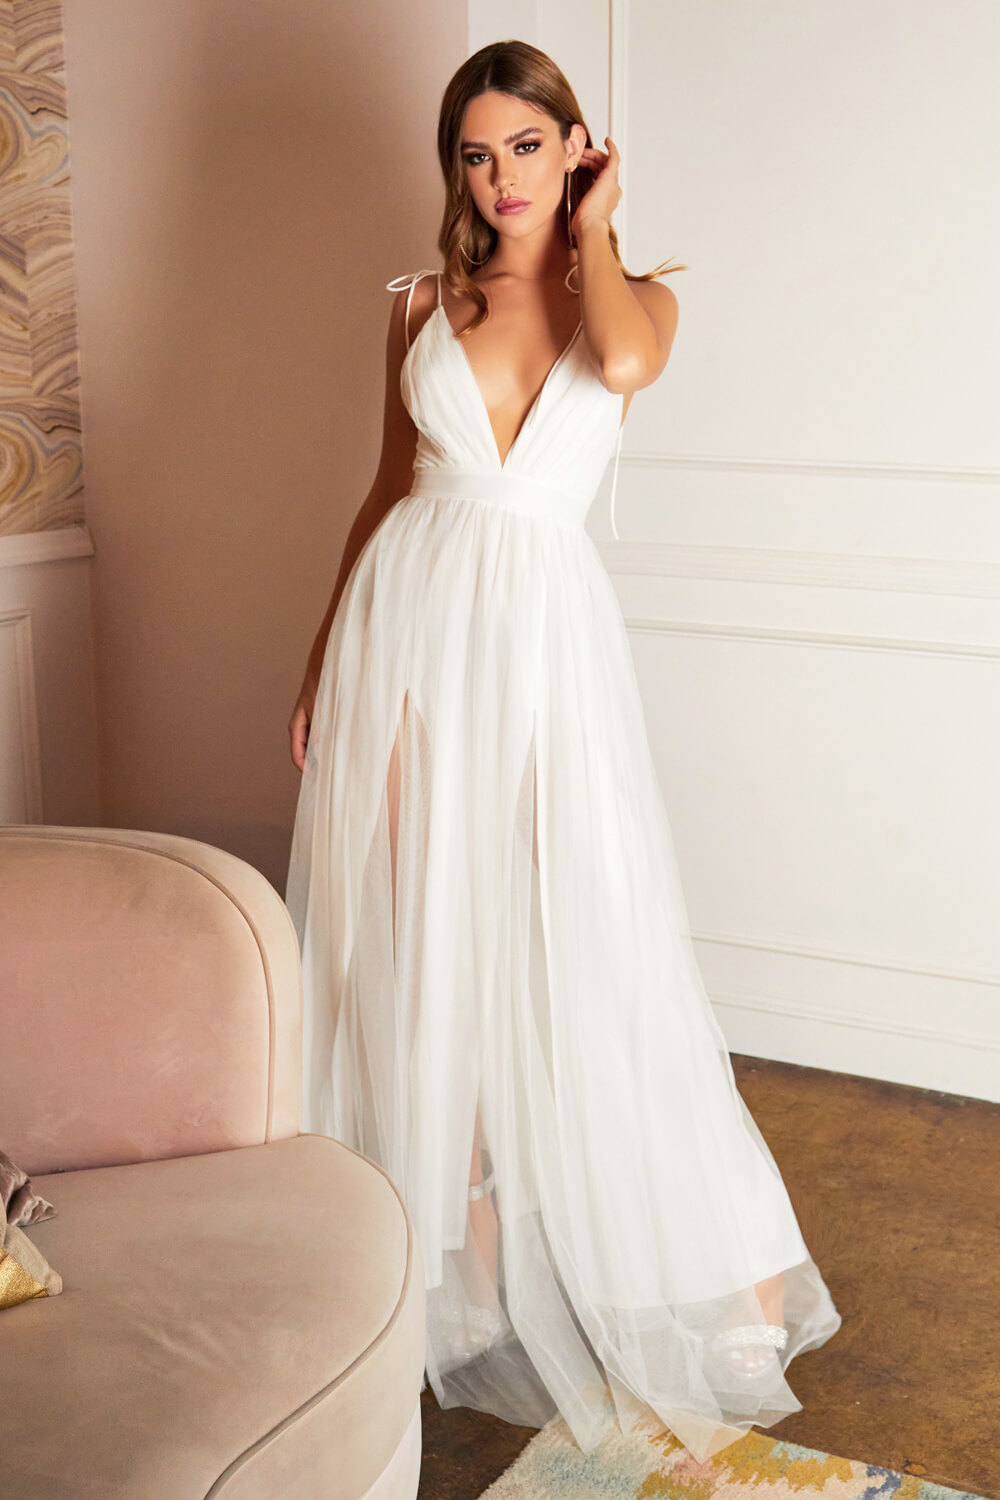 El color Off-white en este vestido de gala te hará ver angelicamente elegante y solemne, en Evening Dress Boutique tenemos la más amplica variedad de vestidos de fiesta